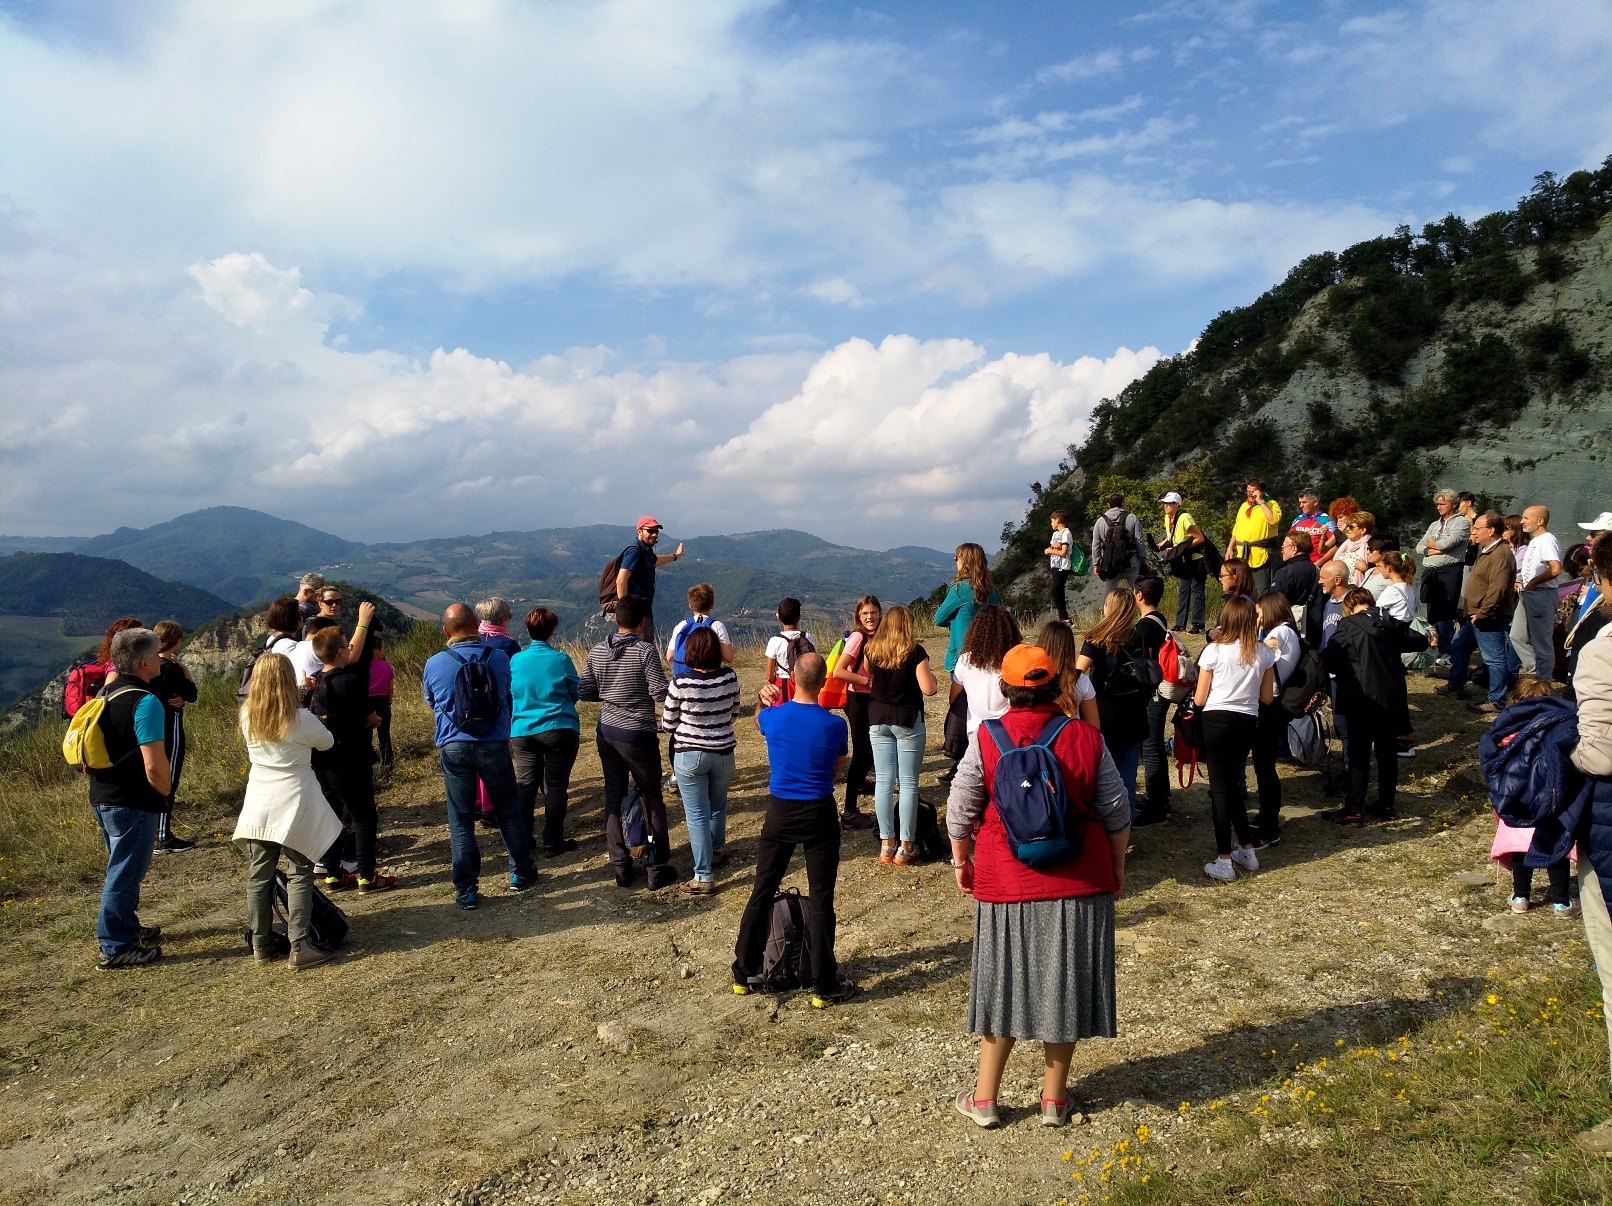 Tappa narrativa sul crinale tra San Martino e Caprara: di fronte al gruppo la valle del Reno - trekking sulla strage di Marzabotto